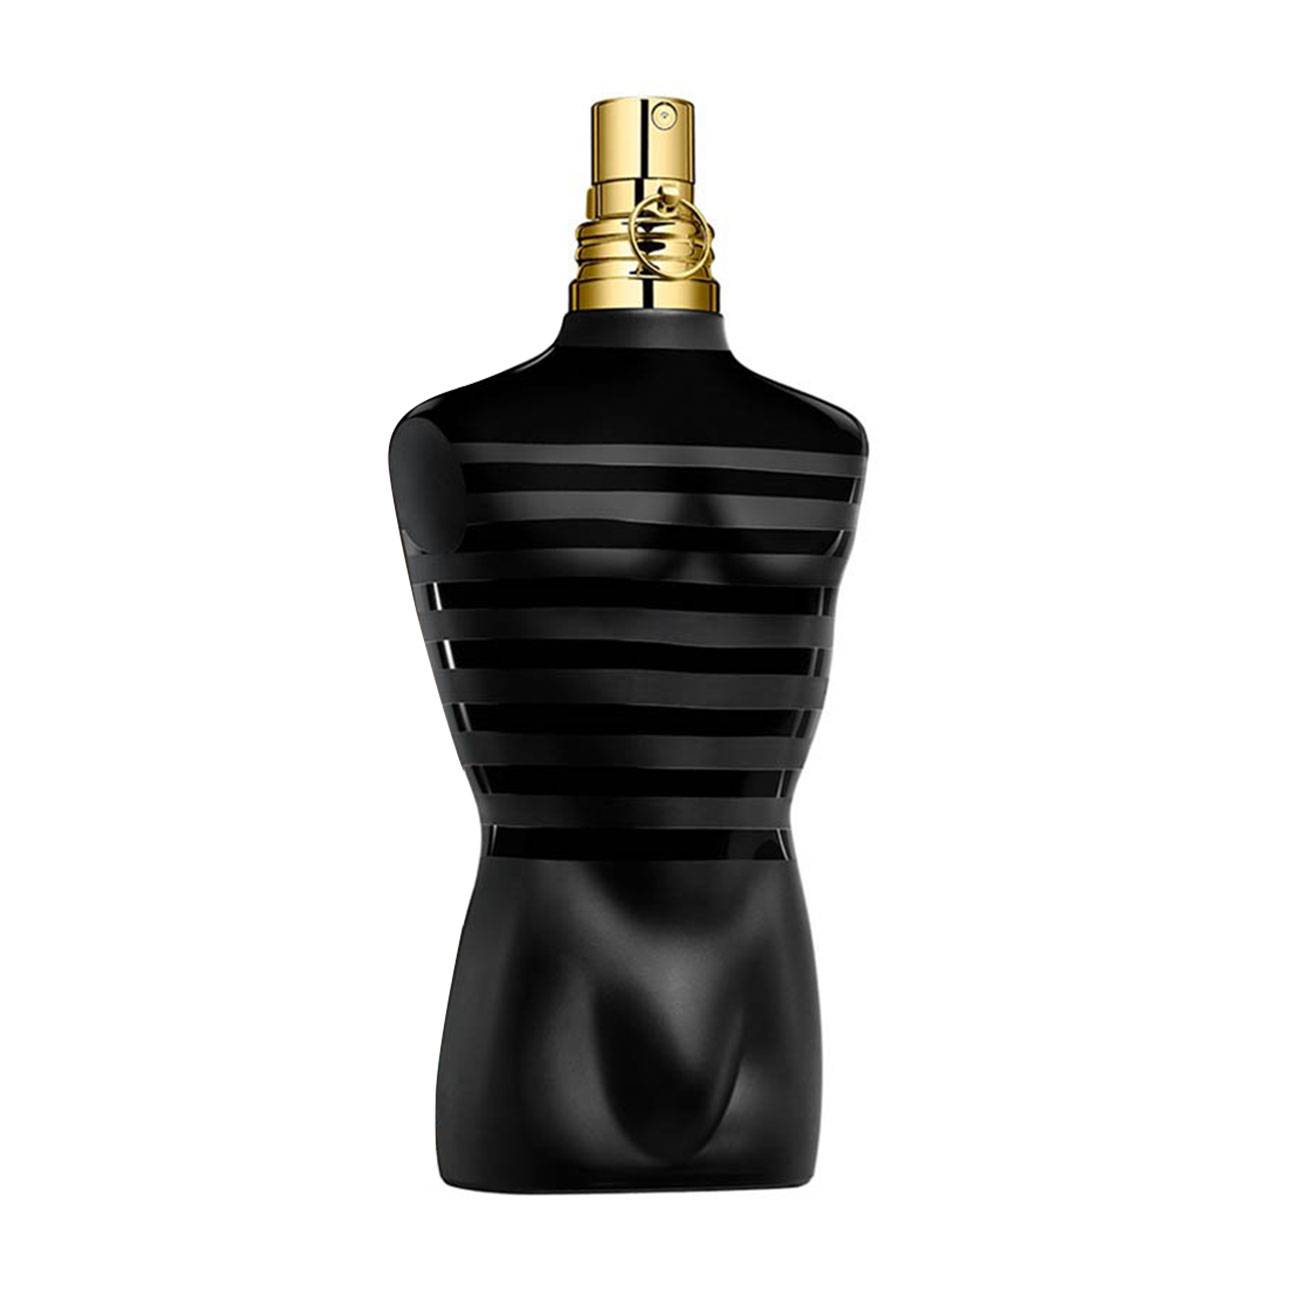 Apa de Parfum Jean Paul Gaultier LE MALE cu comanda online